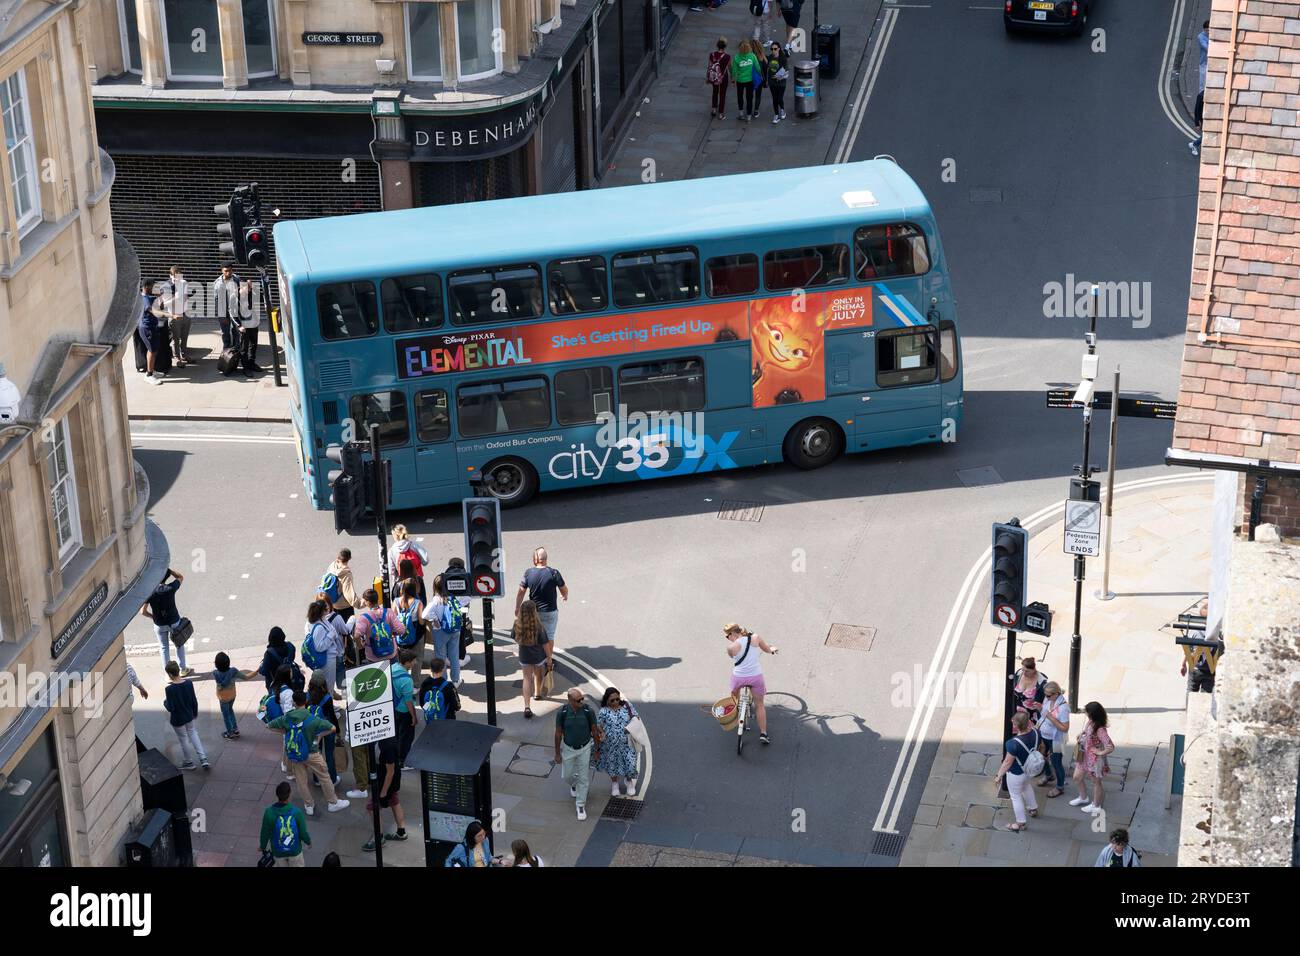 Un bus à deux étages City 35 Ox traversant le centre d'Oxford avec une publicité de film Disney Pixar Elemental sur le côté. Angleterre Banque D'Images